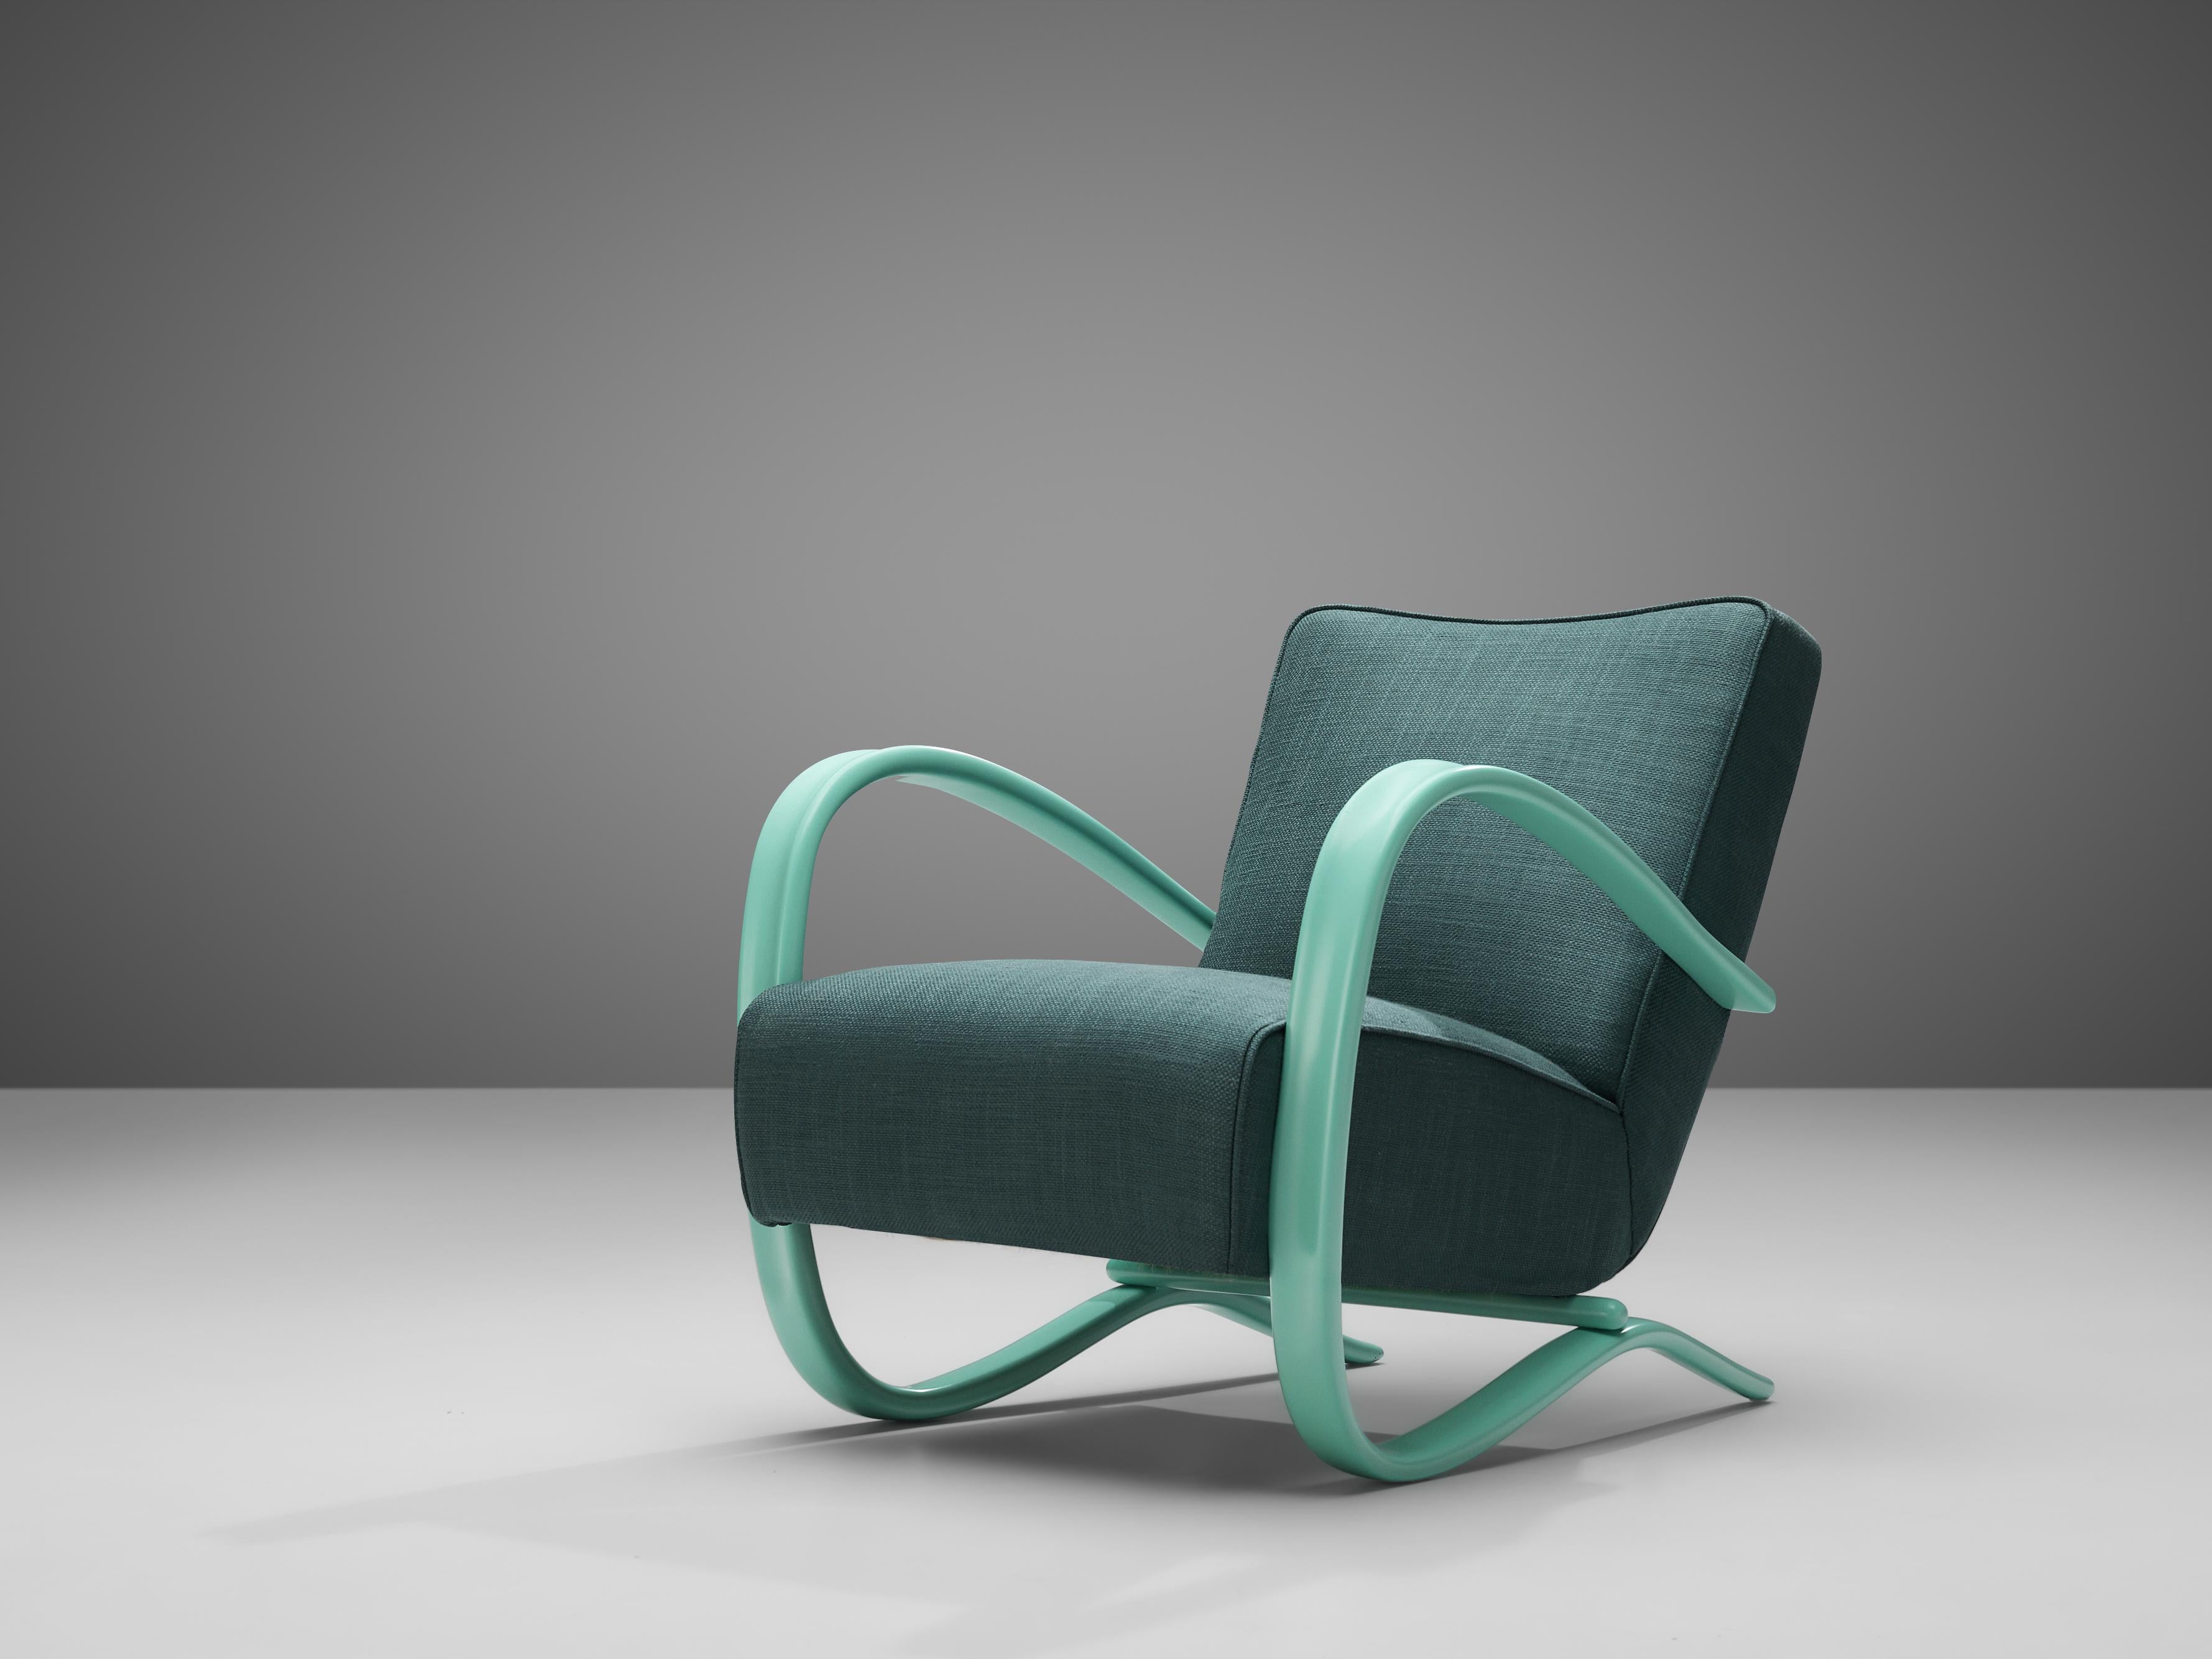 Jindrich Halabala, personalisierbarer Sessel, Holz, Stoff, Tschechische Republik, 1930er Jahre

Außergewöhnlicher Sessel mit grüner Stoffbespannung. Dieser Stuhl hat ein sehr dynamisches und üppiges Aussehen. Wunderschön geschwungene Armlehnen in